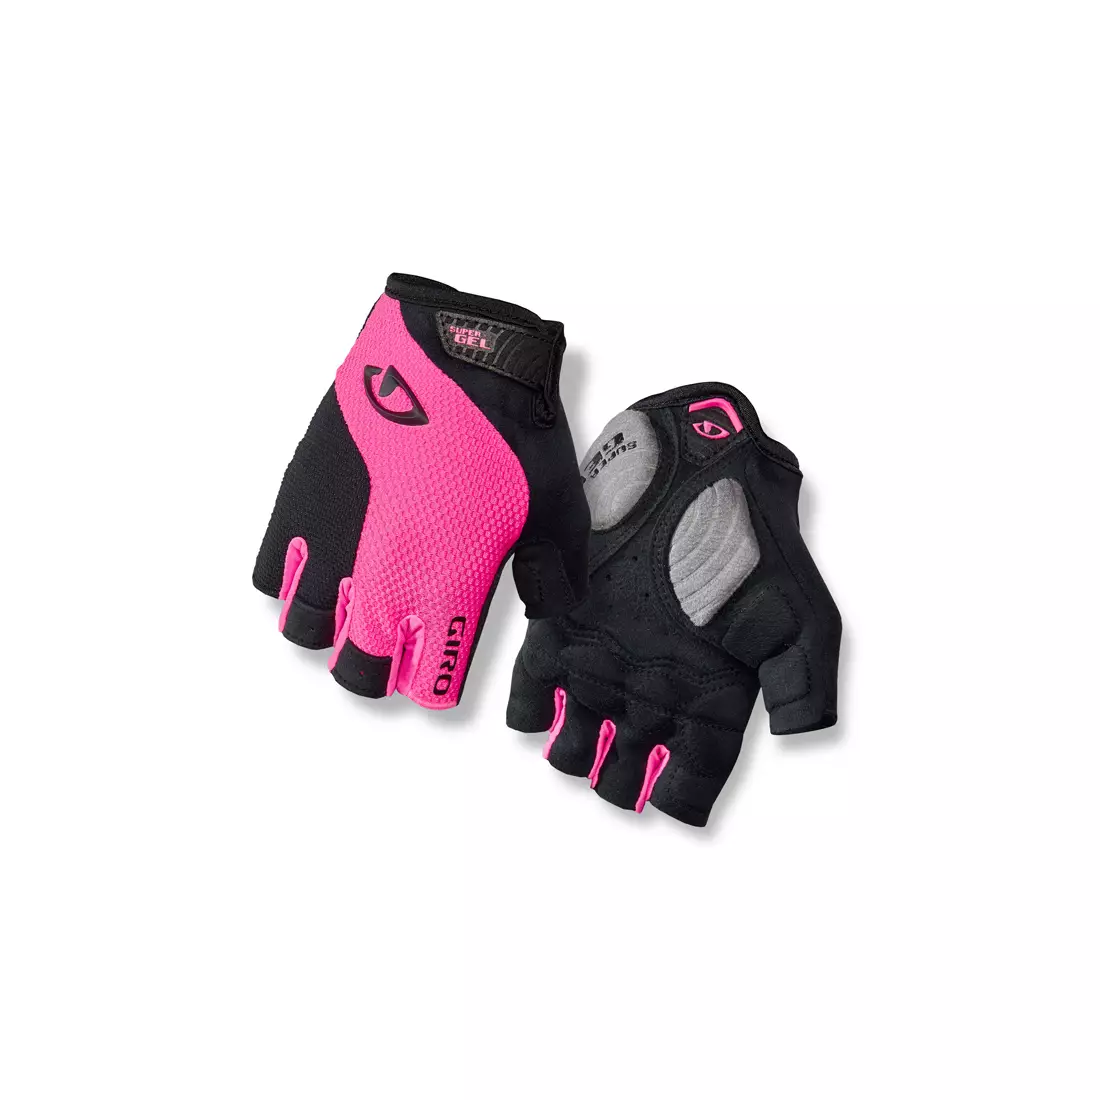 Dámské cyklistické rukavice GIRO STRADAMASSA supergel, černo-růžové